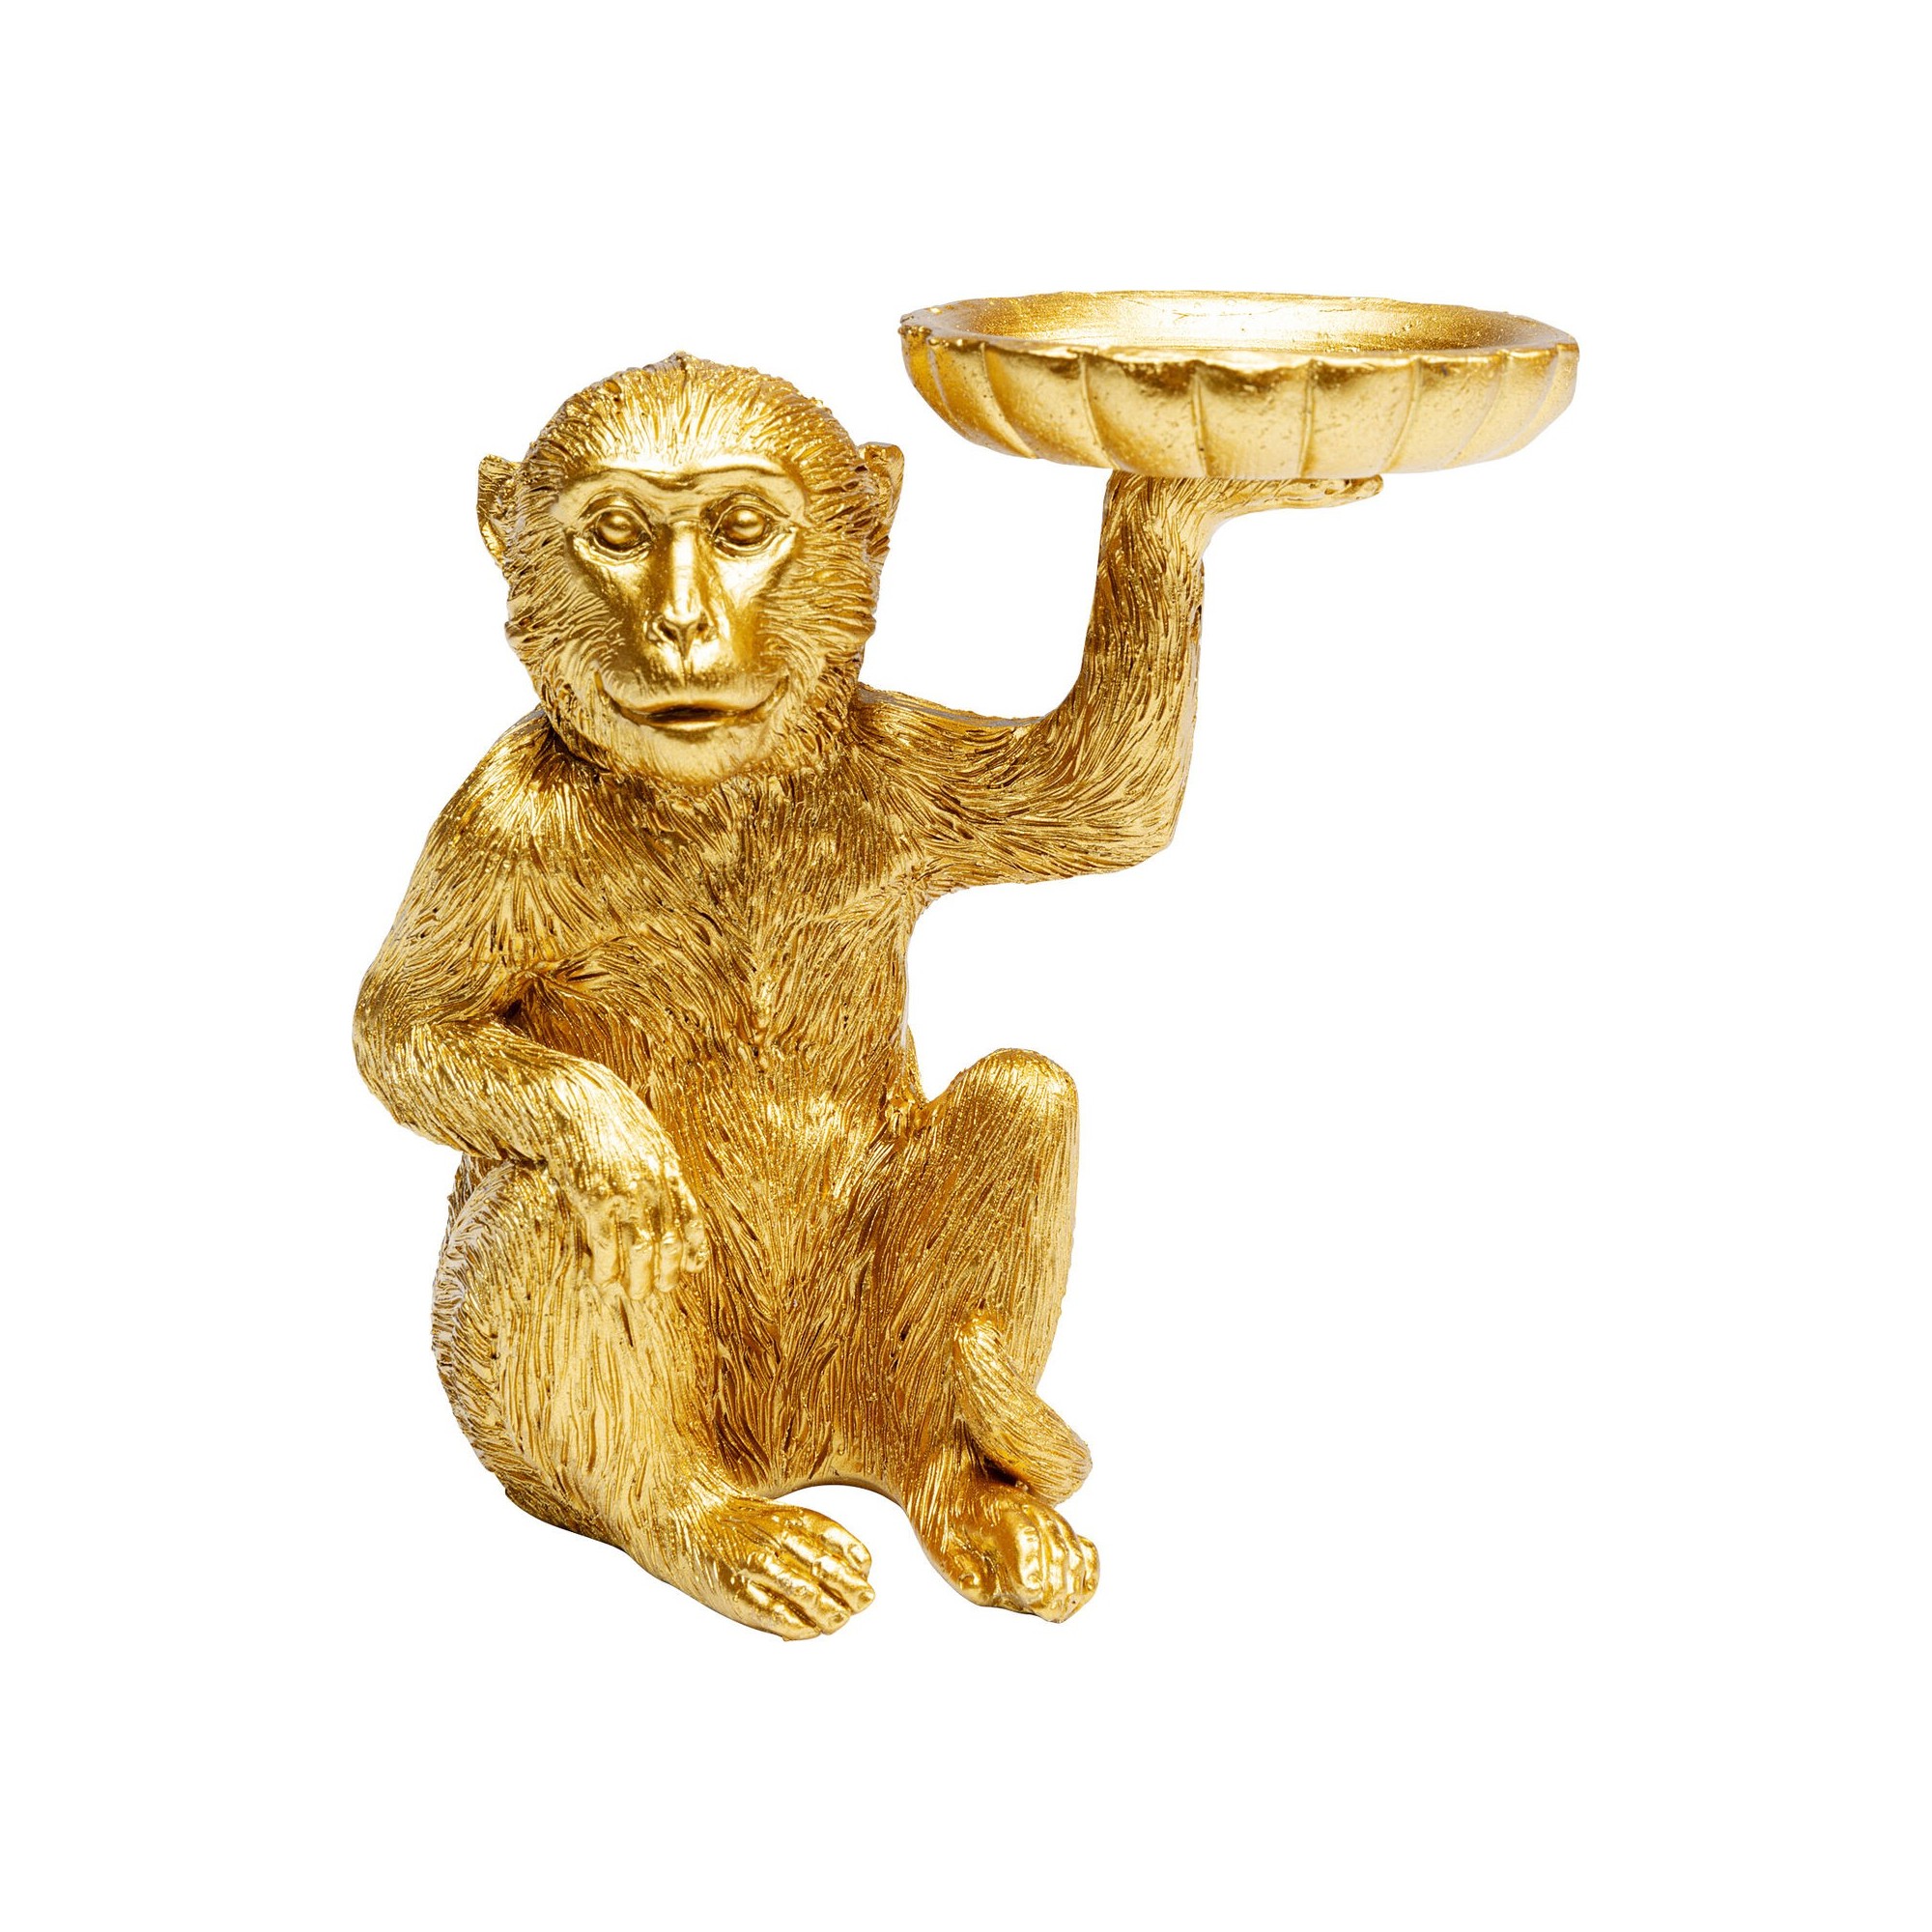 Figurine déco Monkey photophore 11cm